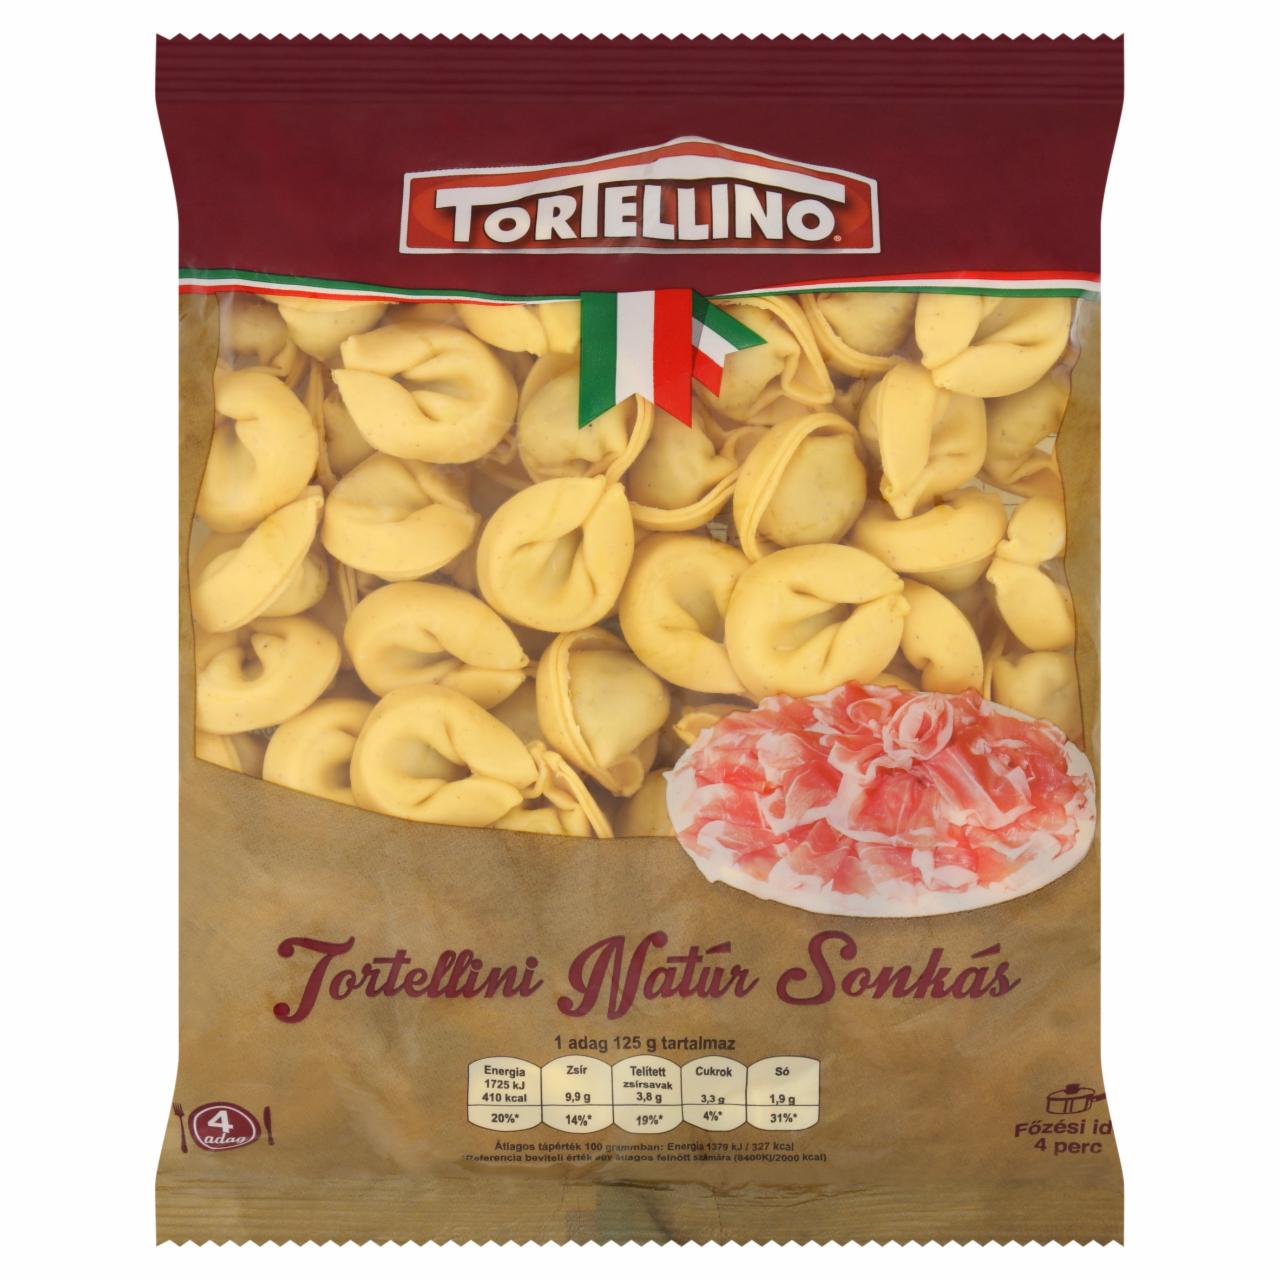 Képek - Tortellino Tortellini natúr sonkás friss tészta 500 g